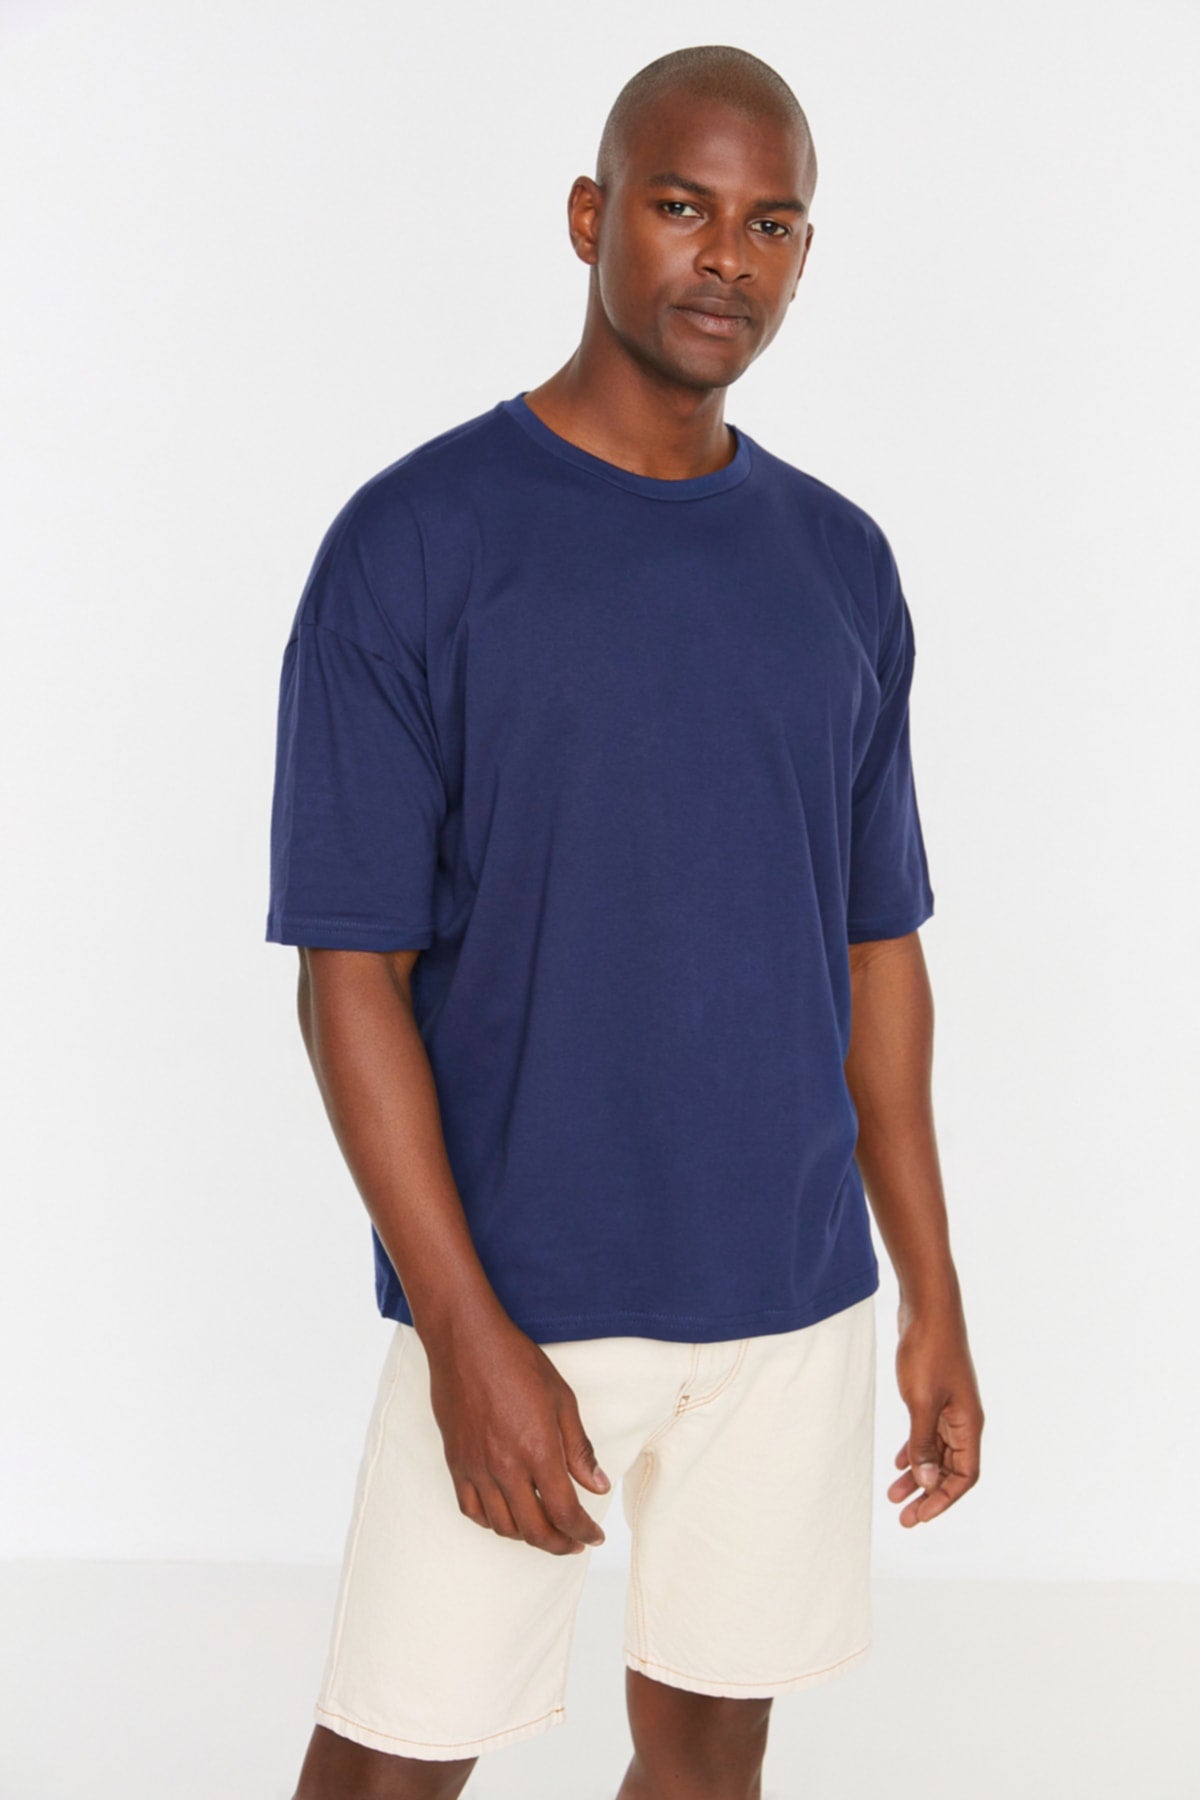 Navy Blue Men's Basic 100% Cotton Crew Neck Oversize Short Sleeved T-Shirt